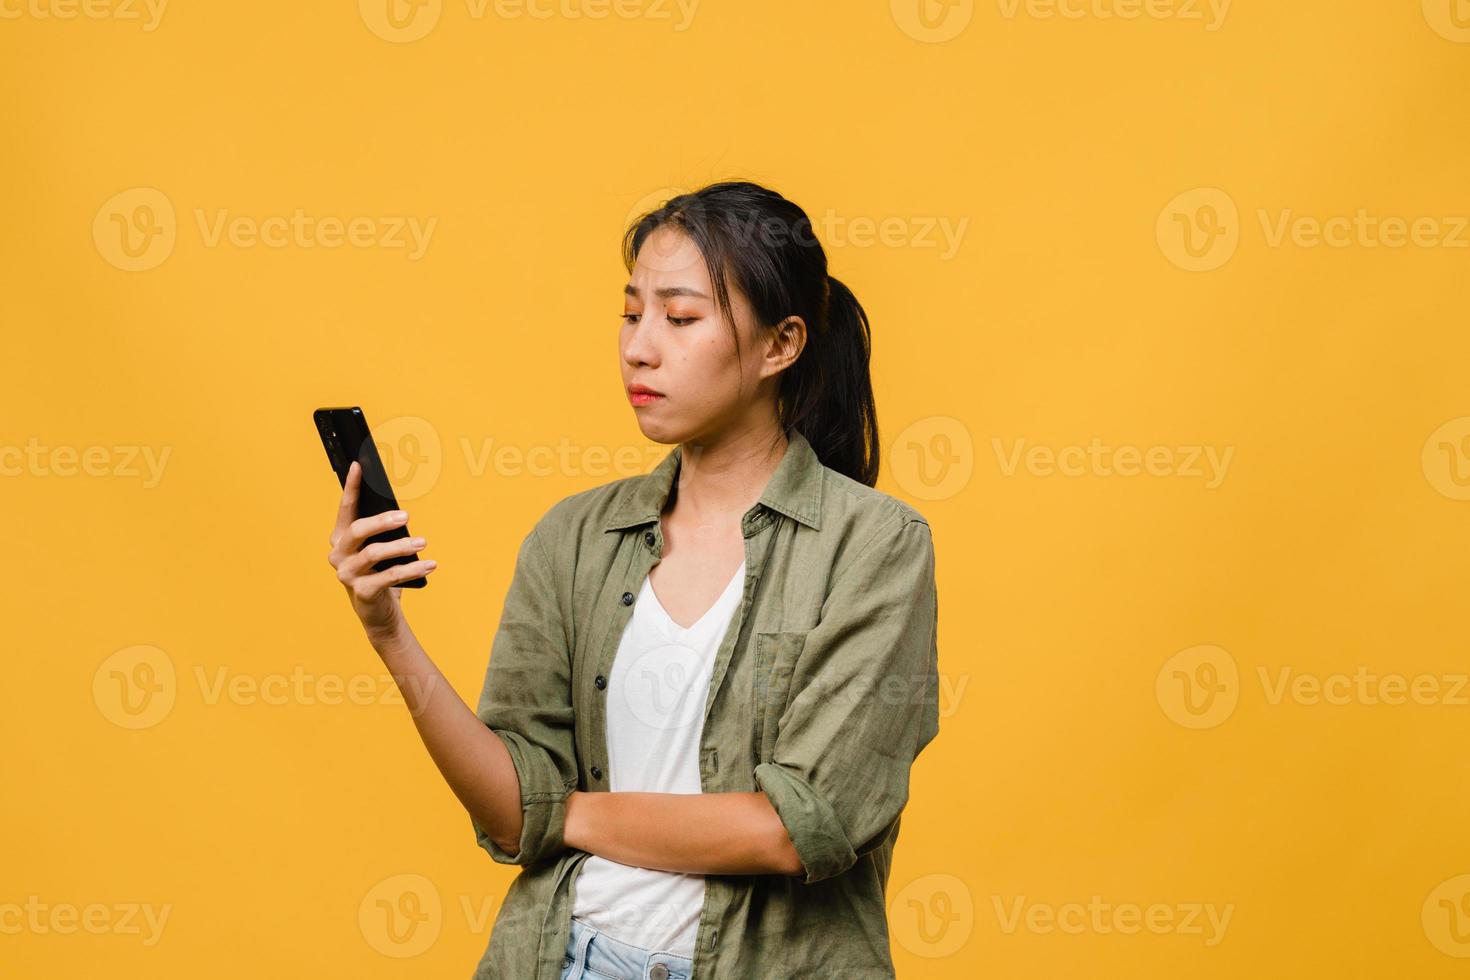 pensant rêver d'une jeune femme asiatique utilisant un téléphone avec une expression positive, vêtue d'un tissu décontracté, se sentant heureuse et se tenant isolée sur fond jaune. heureuse adorable femme heureuse se réjouit du succès. photo